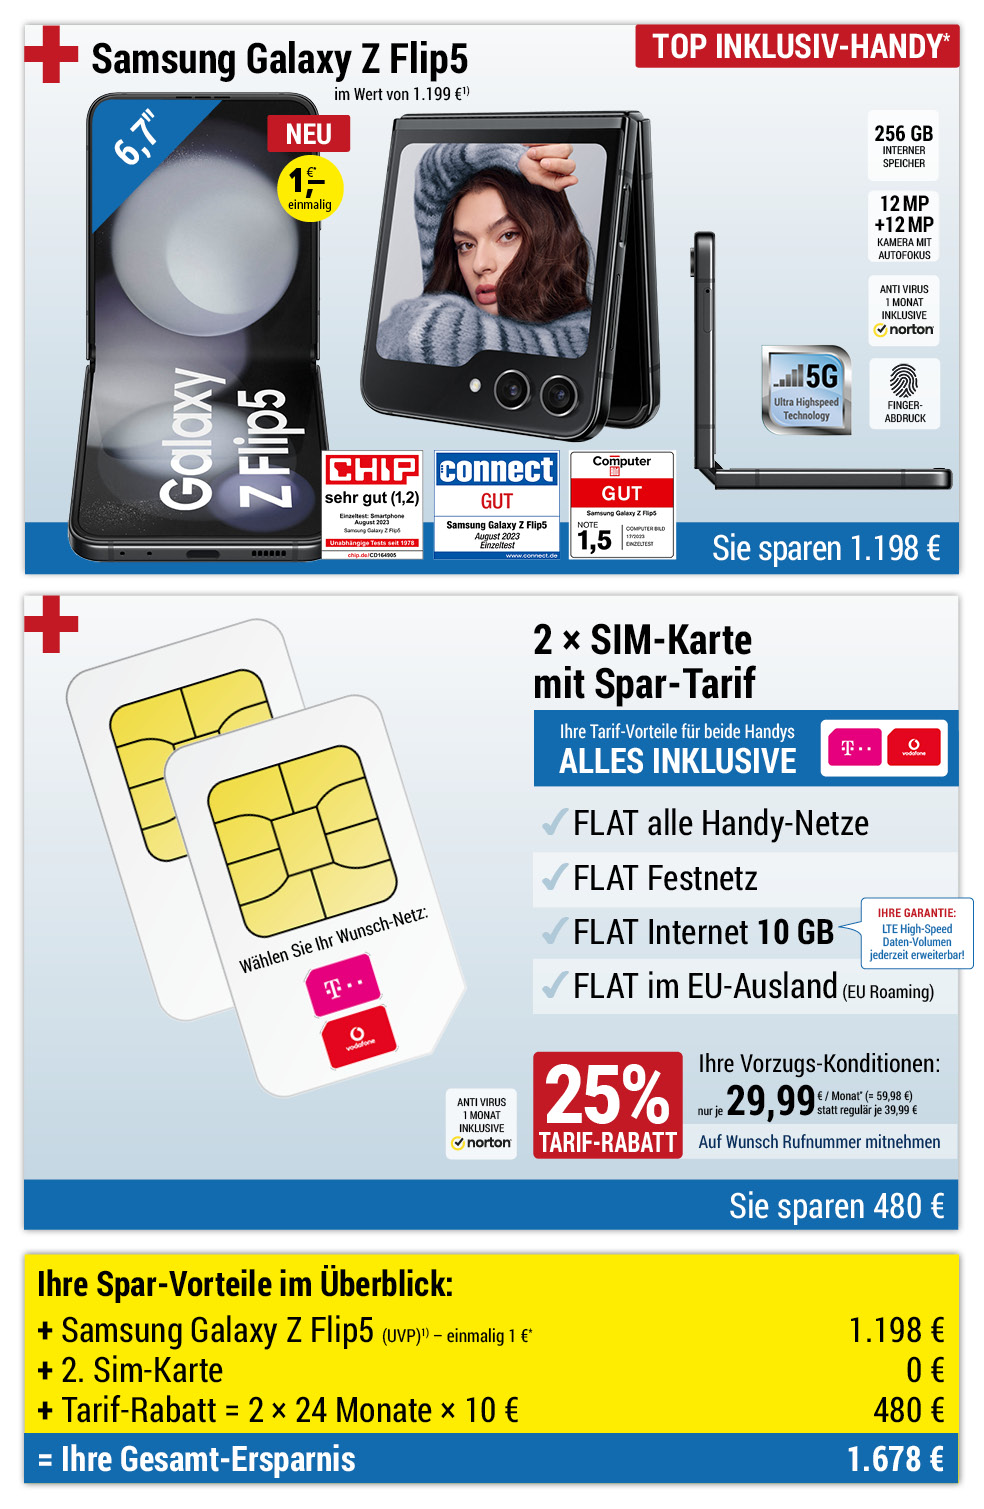 Für nur 1 €*: Samsung Galaxy Z Flip 5 + 2. Sim-Karte + Handyverträge mit ALL NET FLAT für je 29,99 €/Monat